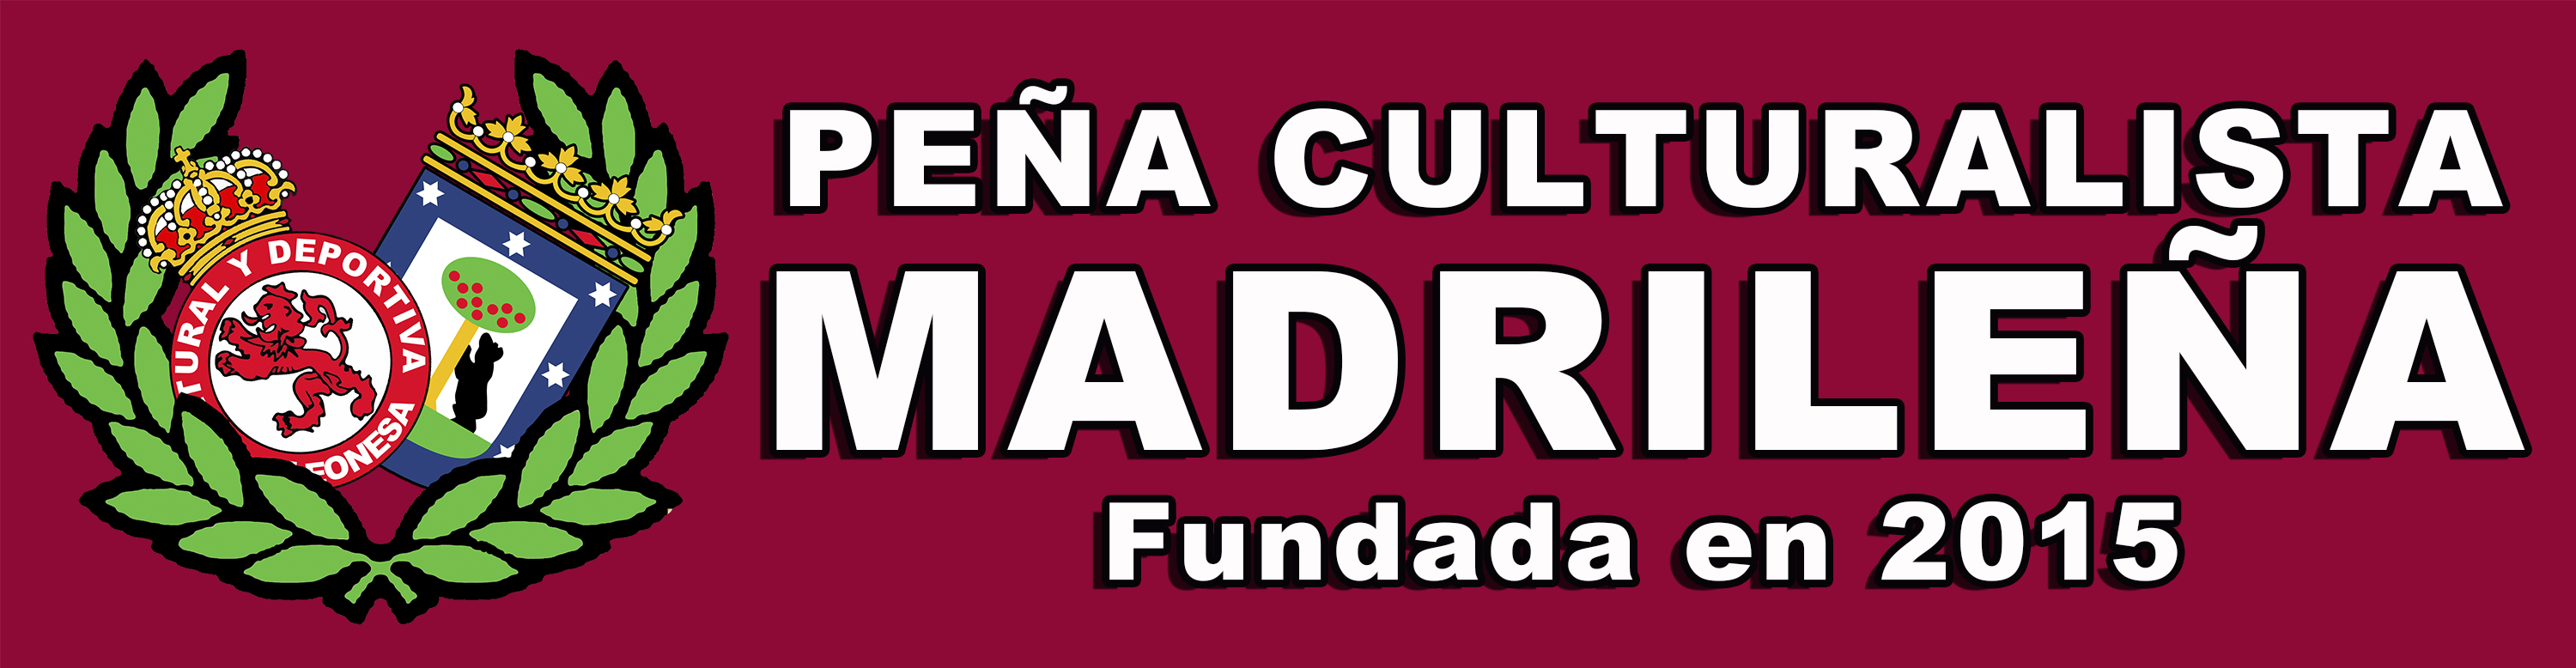 Peña Culturalista Madrileña